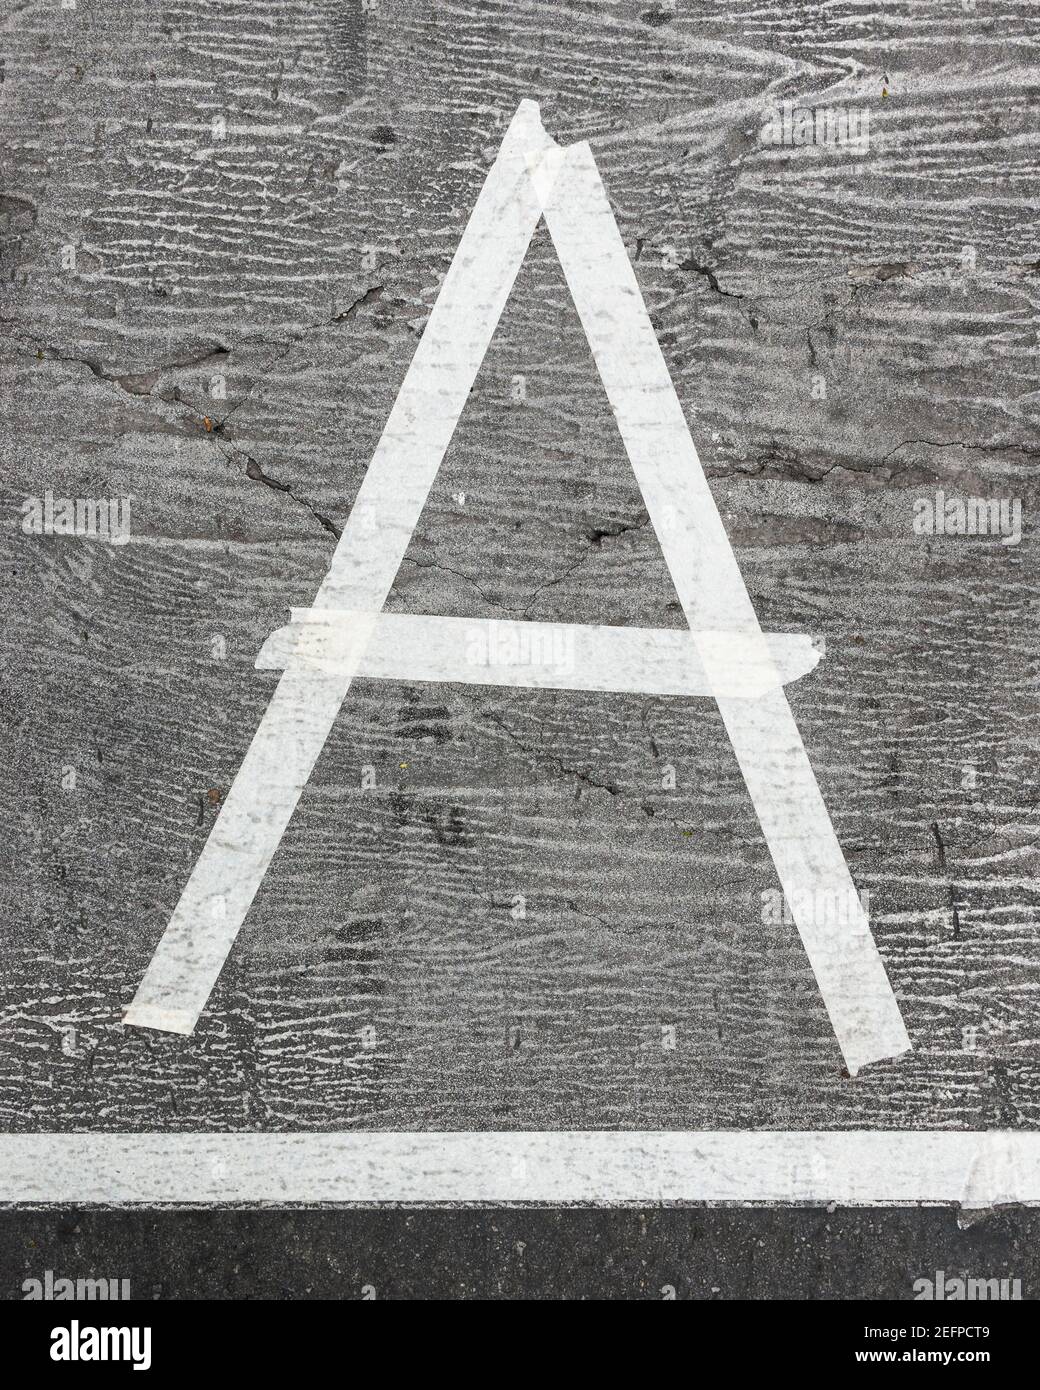 Lettre A en ruban adhésif et collée sur du gris surface Banque D'Images